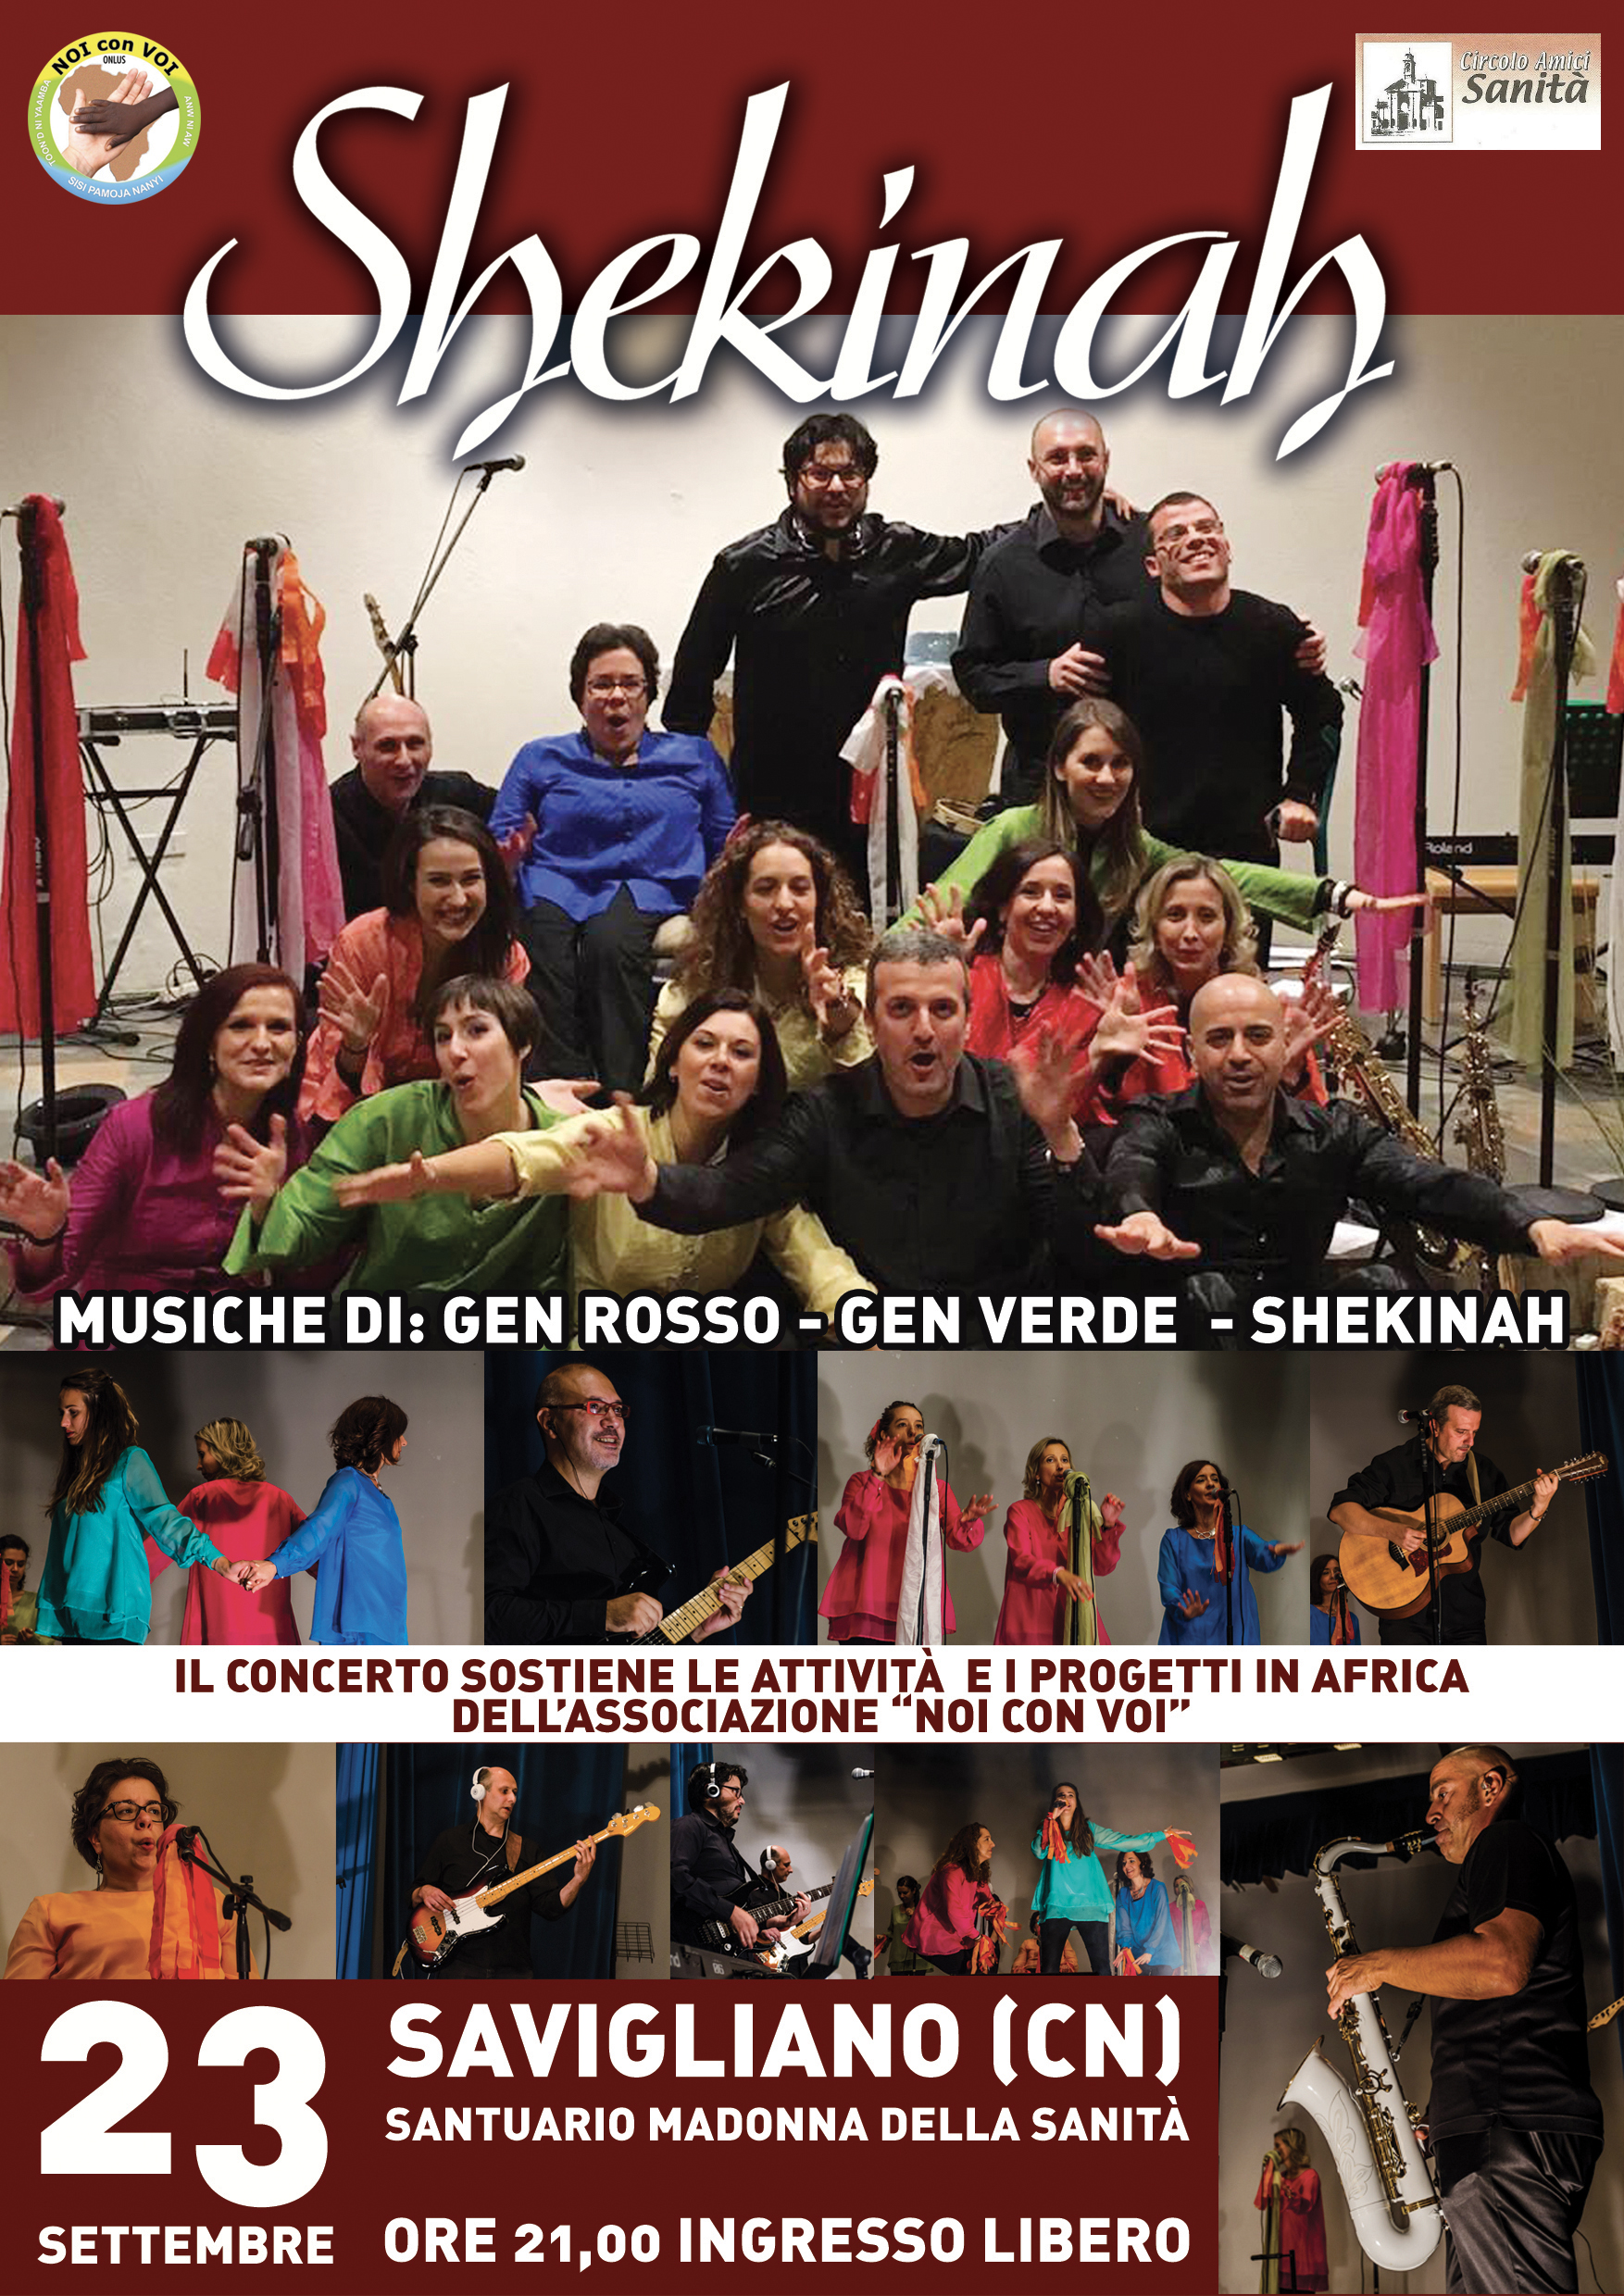 23 settembre 2017: Concerto con il gruppo Shekinah